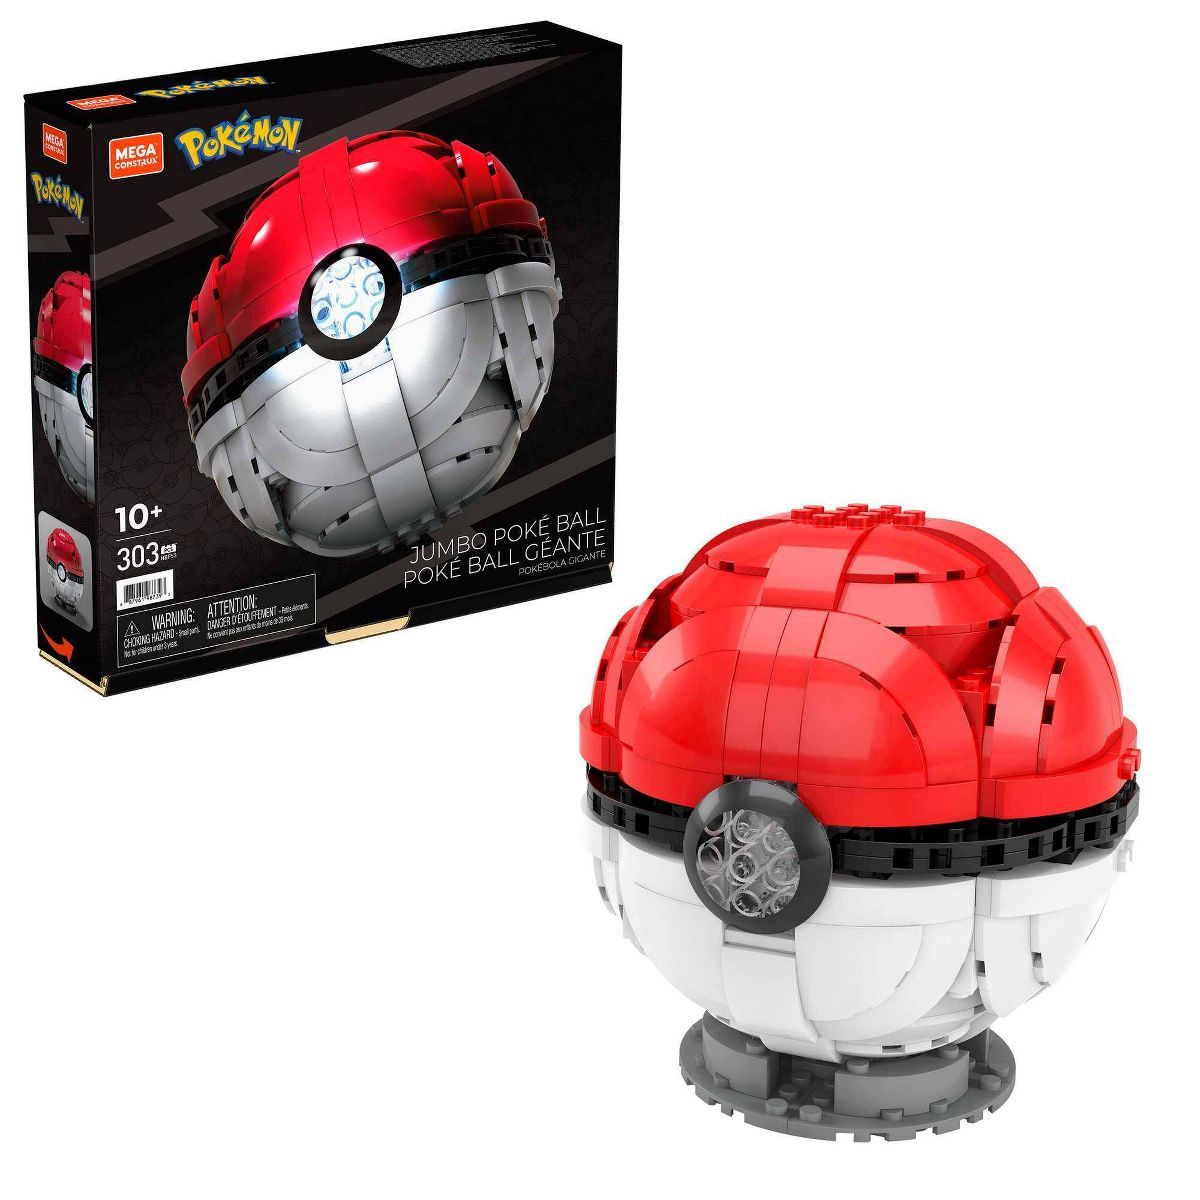 MEGA Pokemon Jumbo Poke Ball Building Set - 303pcs | Target